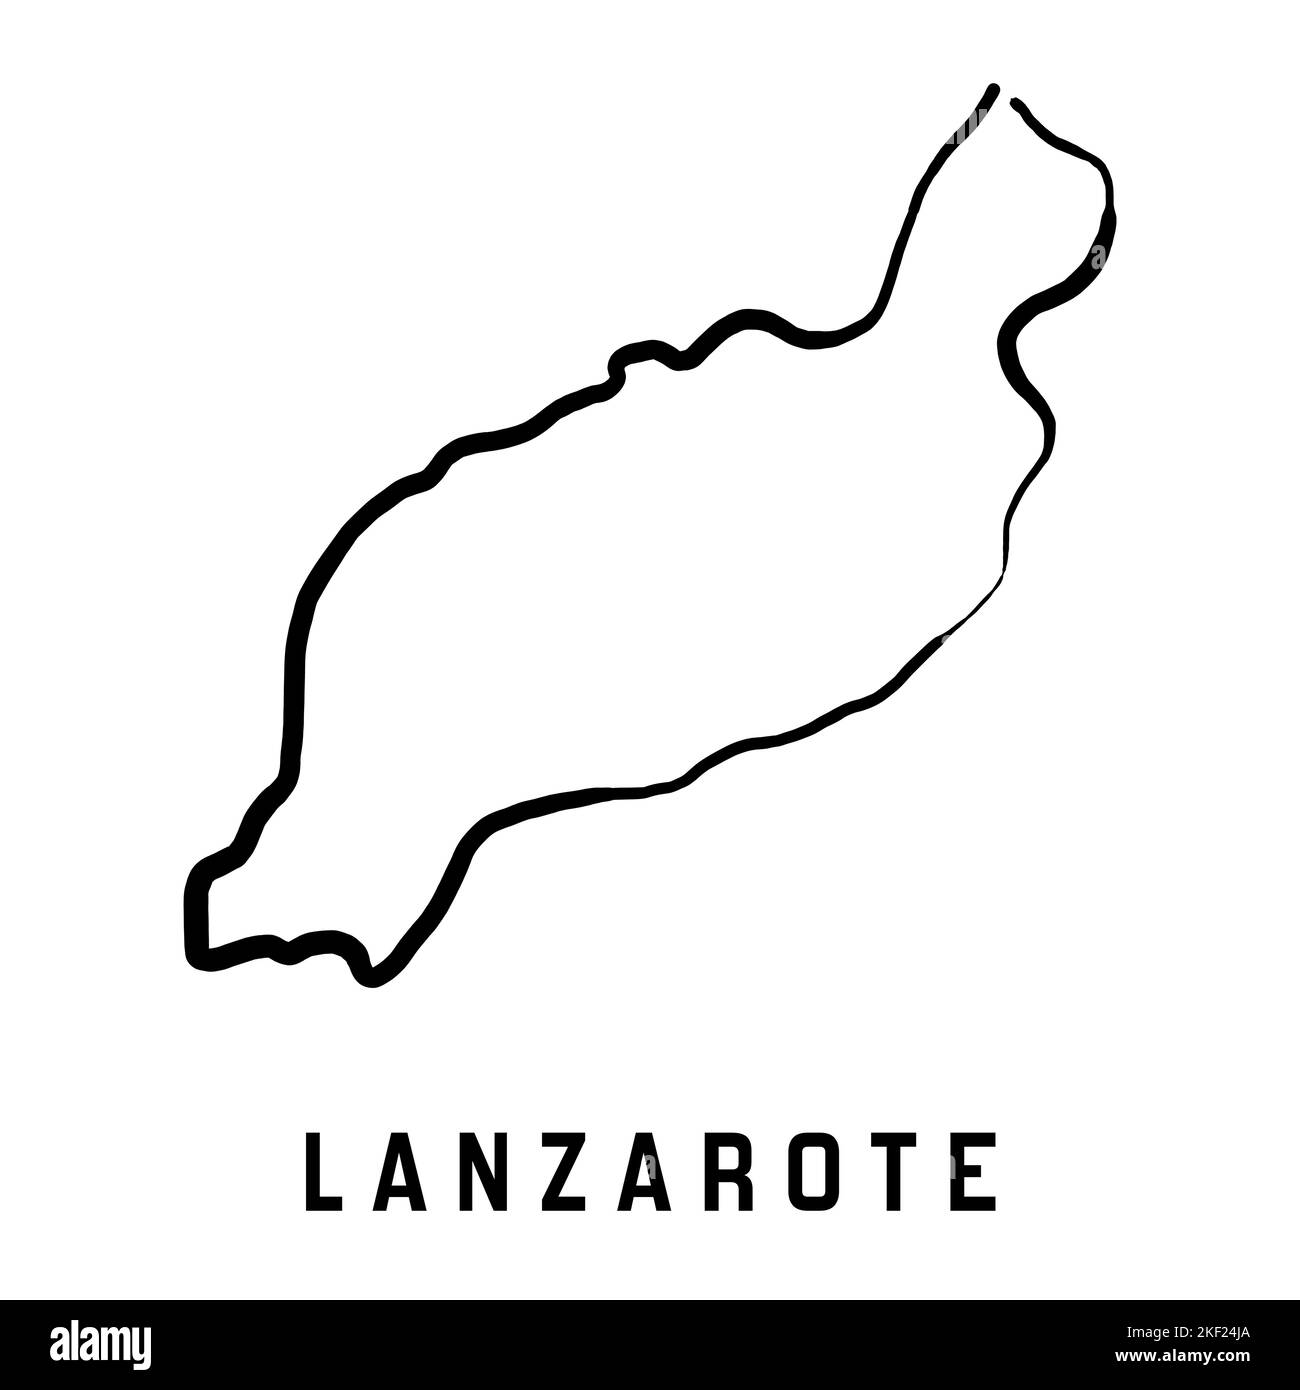 Karte der Insel Lanzarote einfacher Überblick. Vektorgrafik handgezeichnete Karte im vereinfachten Stil. Stock Vektor